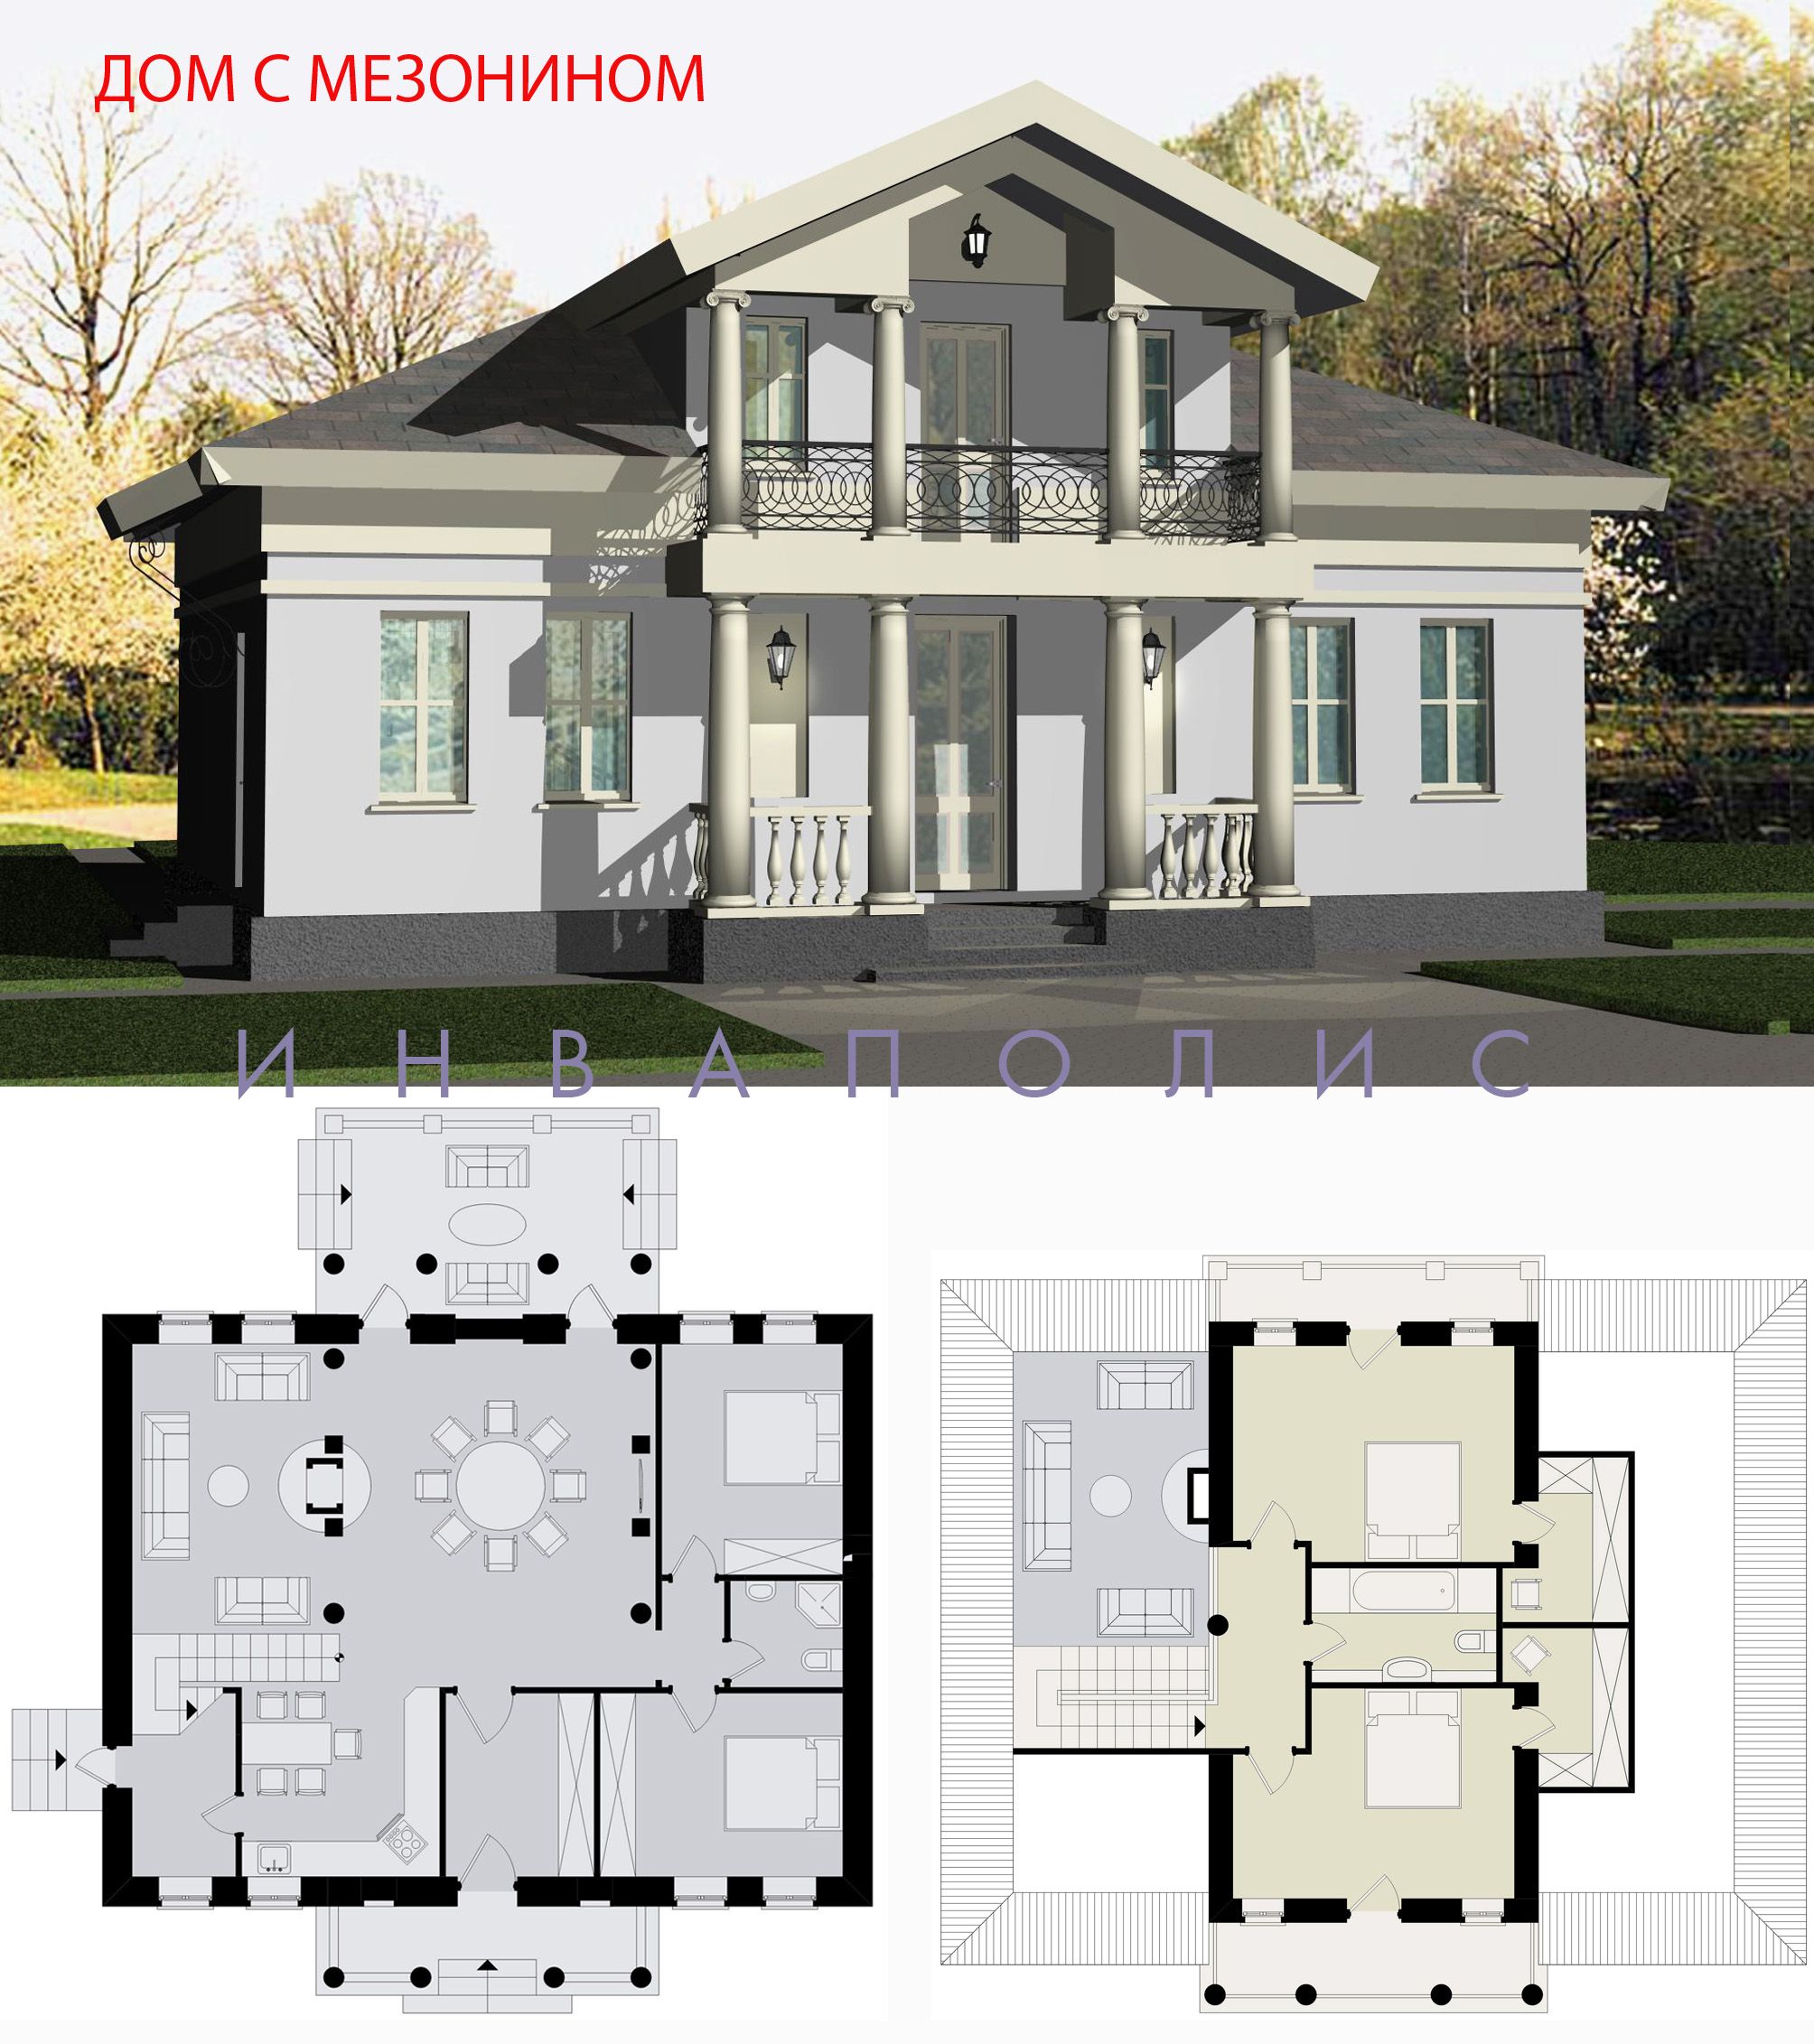 Дом с мезонином: отличия от мансарды и обзор комфортных вариантов планировки - самстрой - строительство, дизайн, архитектура.